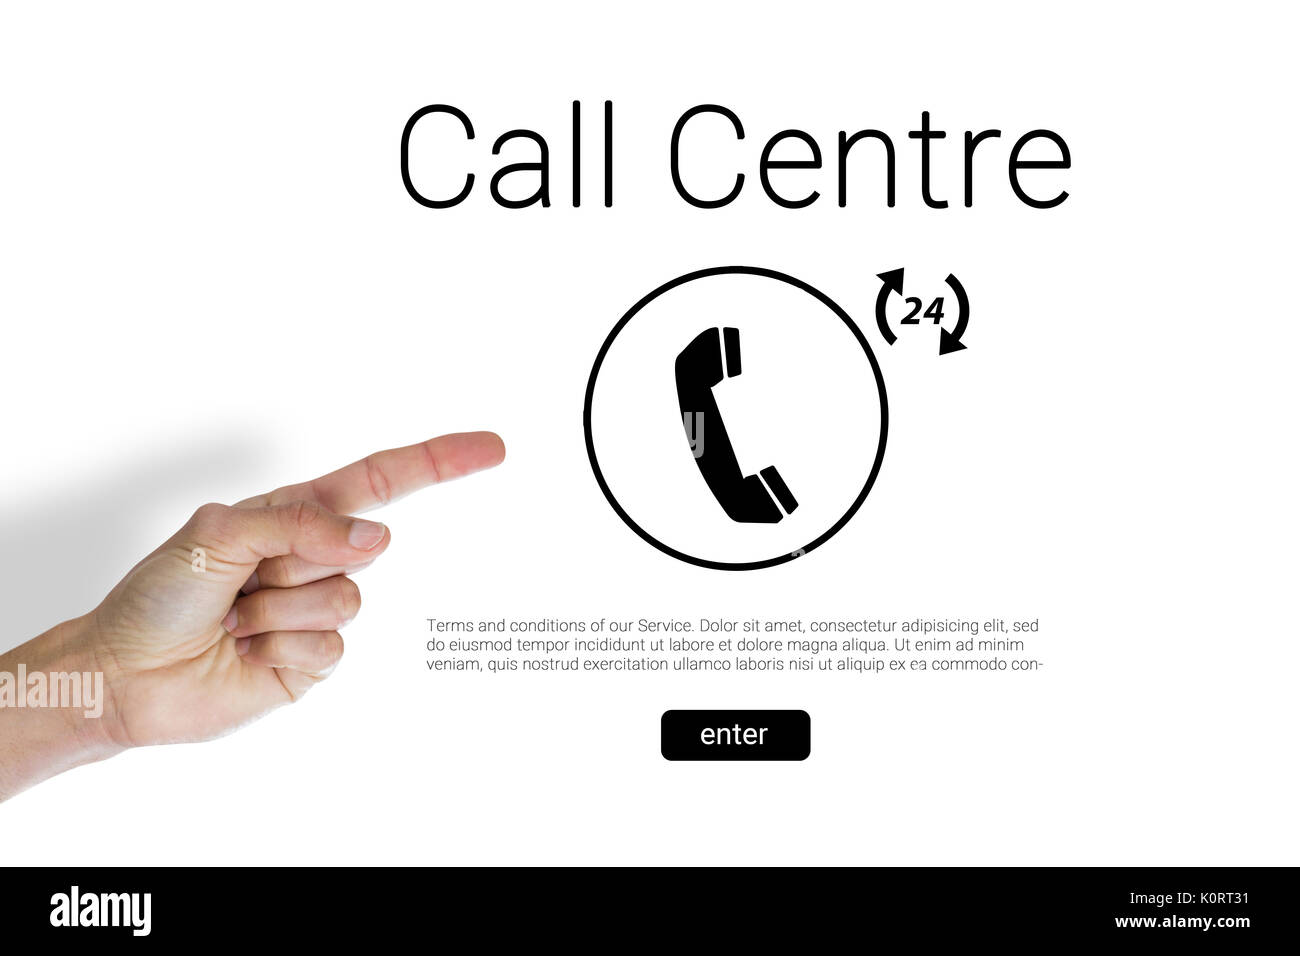 La main coupée de l'homme pointant contre call centre texte avec icône de téléphone Banque D'Images